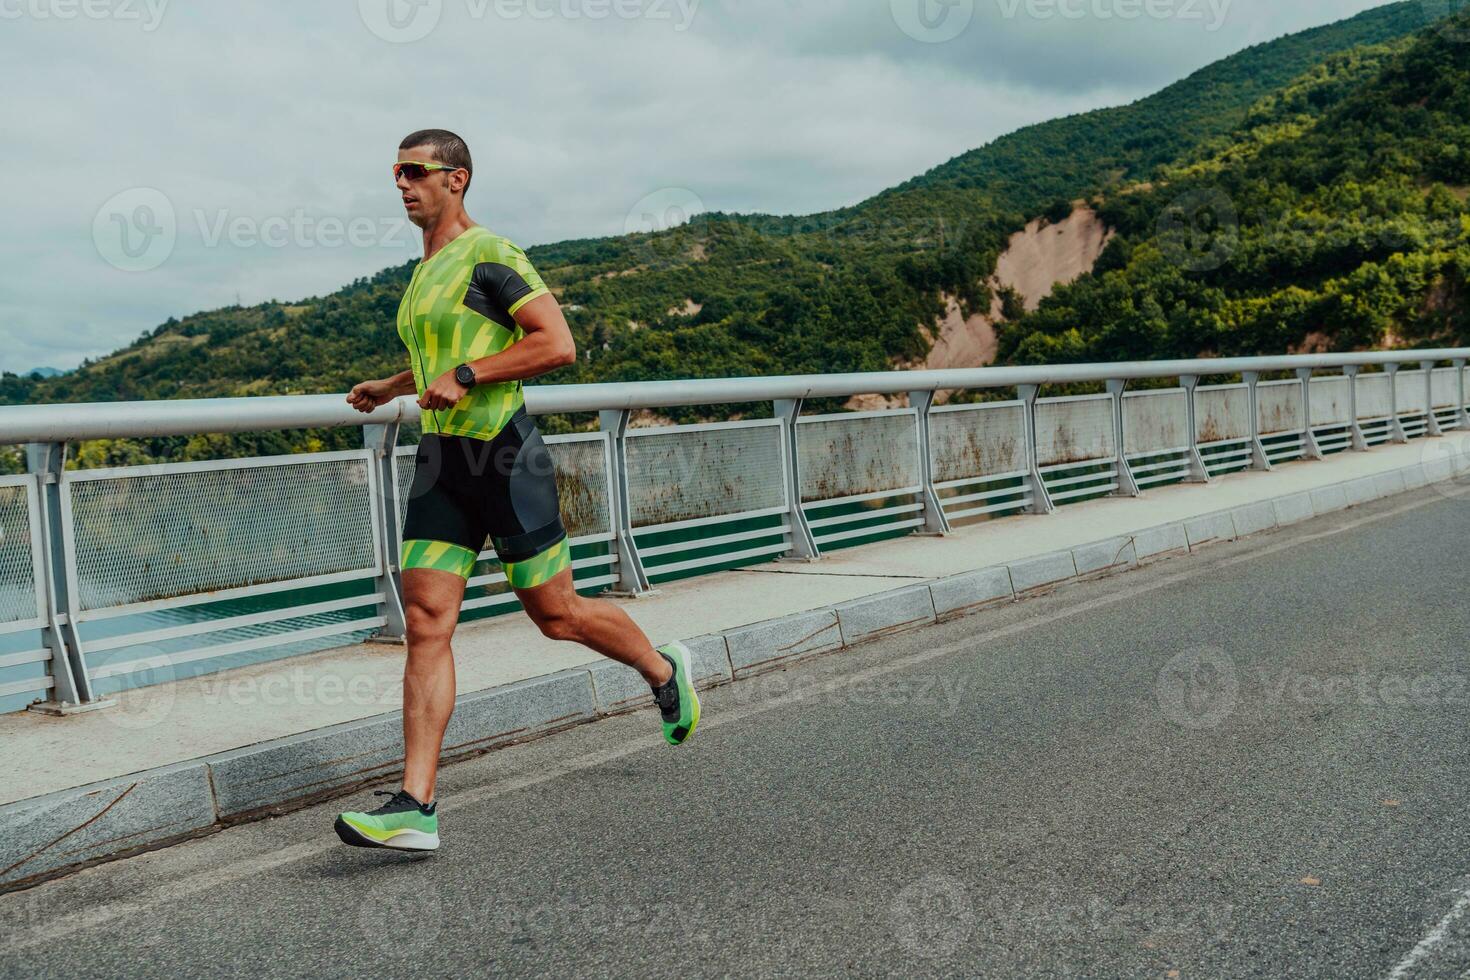 un athlète fonctionnement une marathon et en train de préparer pour le sien concours. photo de une marathon coureur fonctionnement dans un Urbain environnement